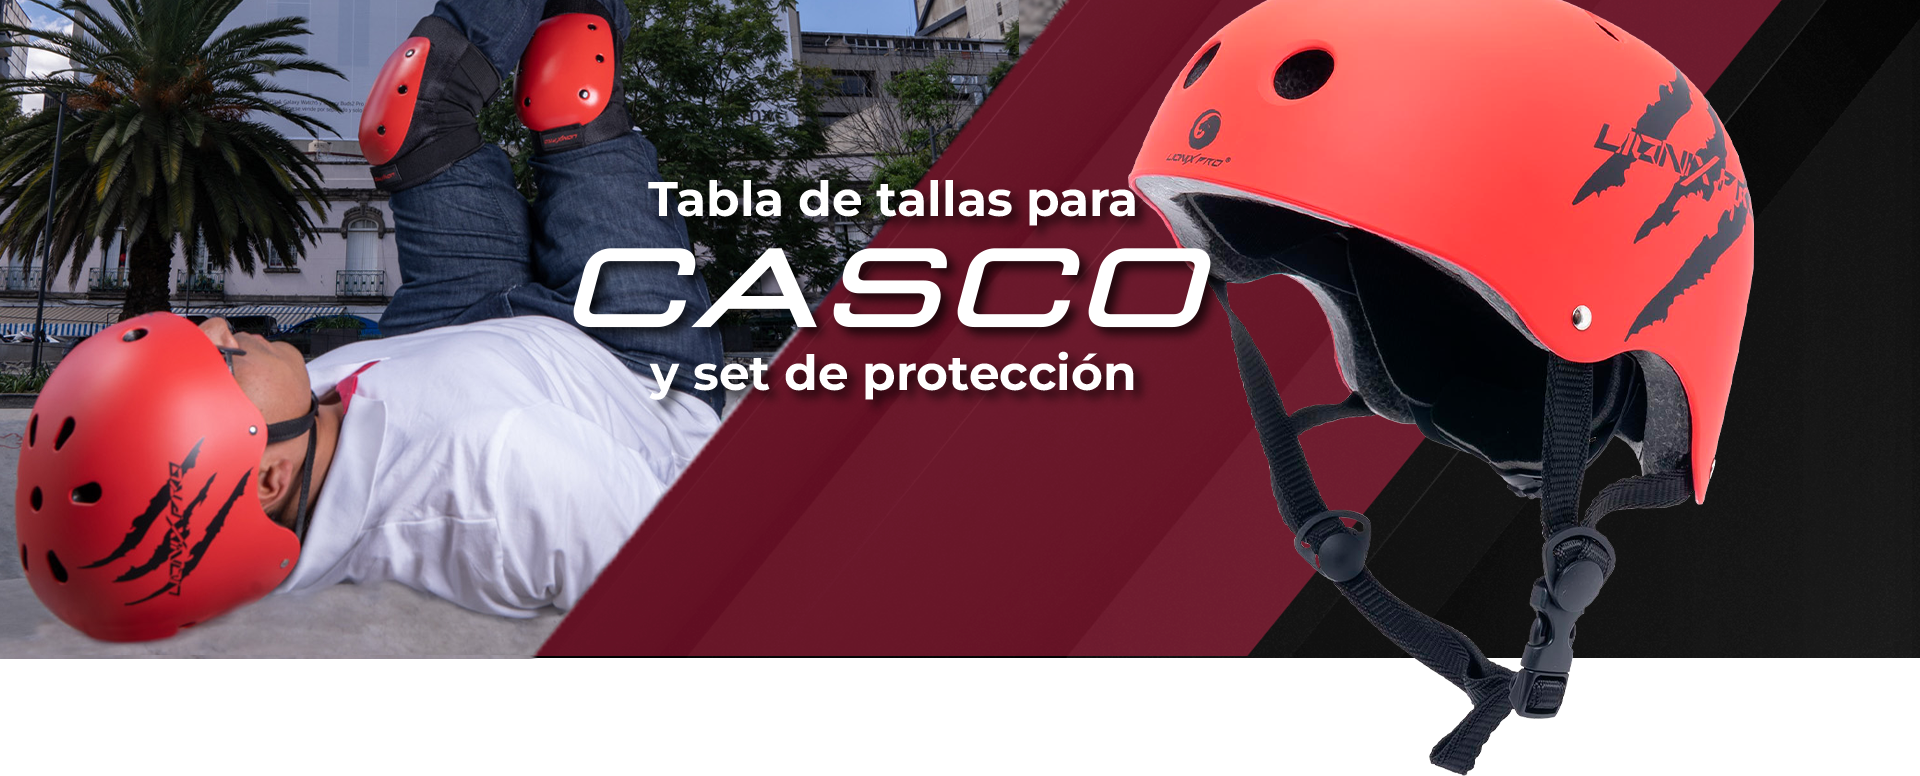 Tabla de tallas para casco y set de protección